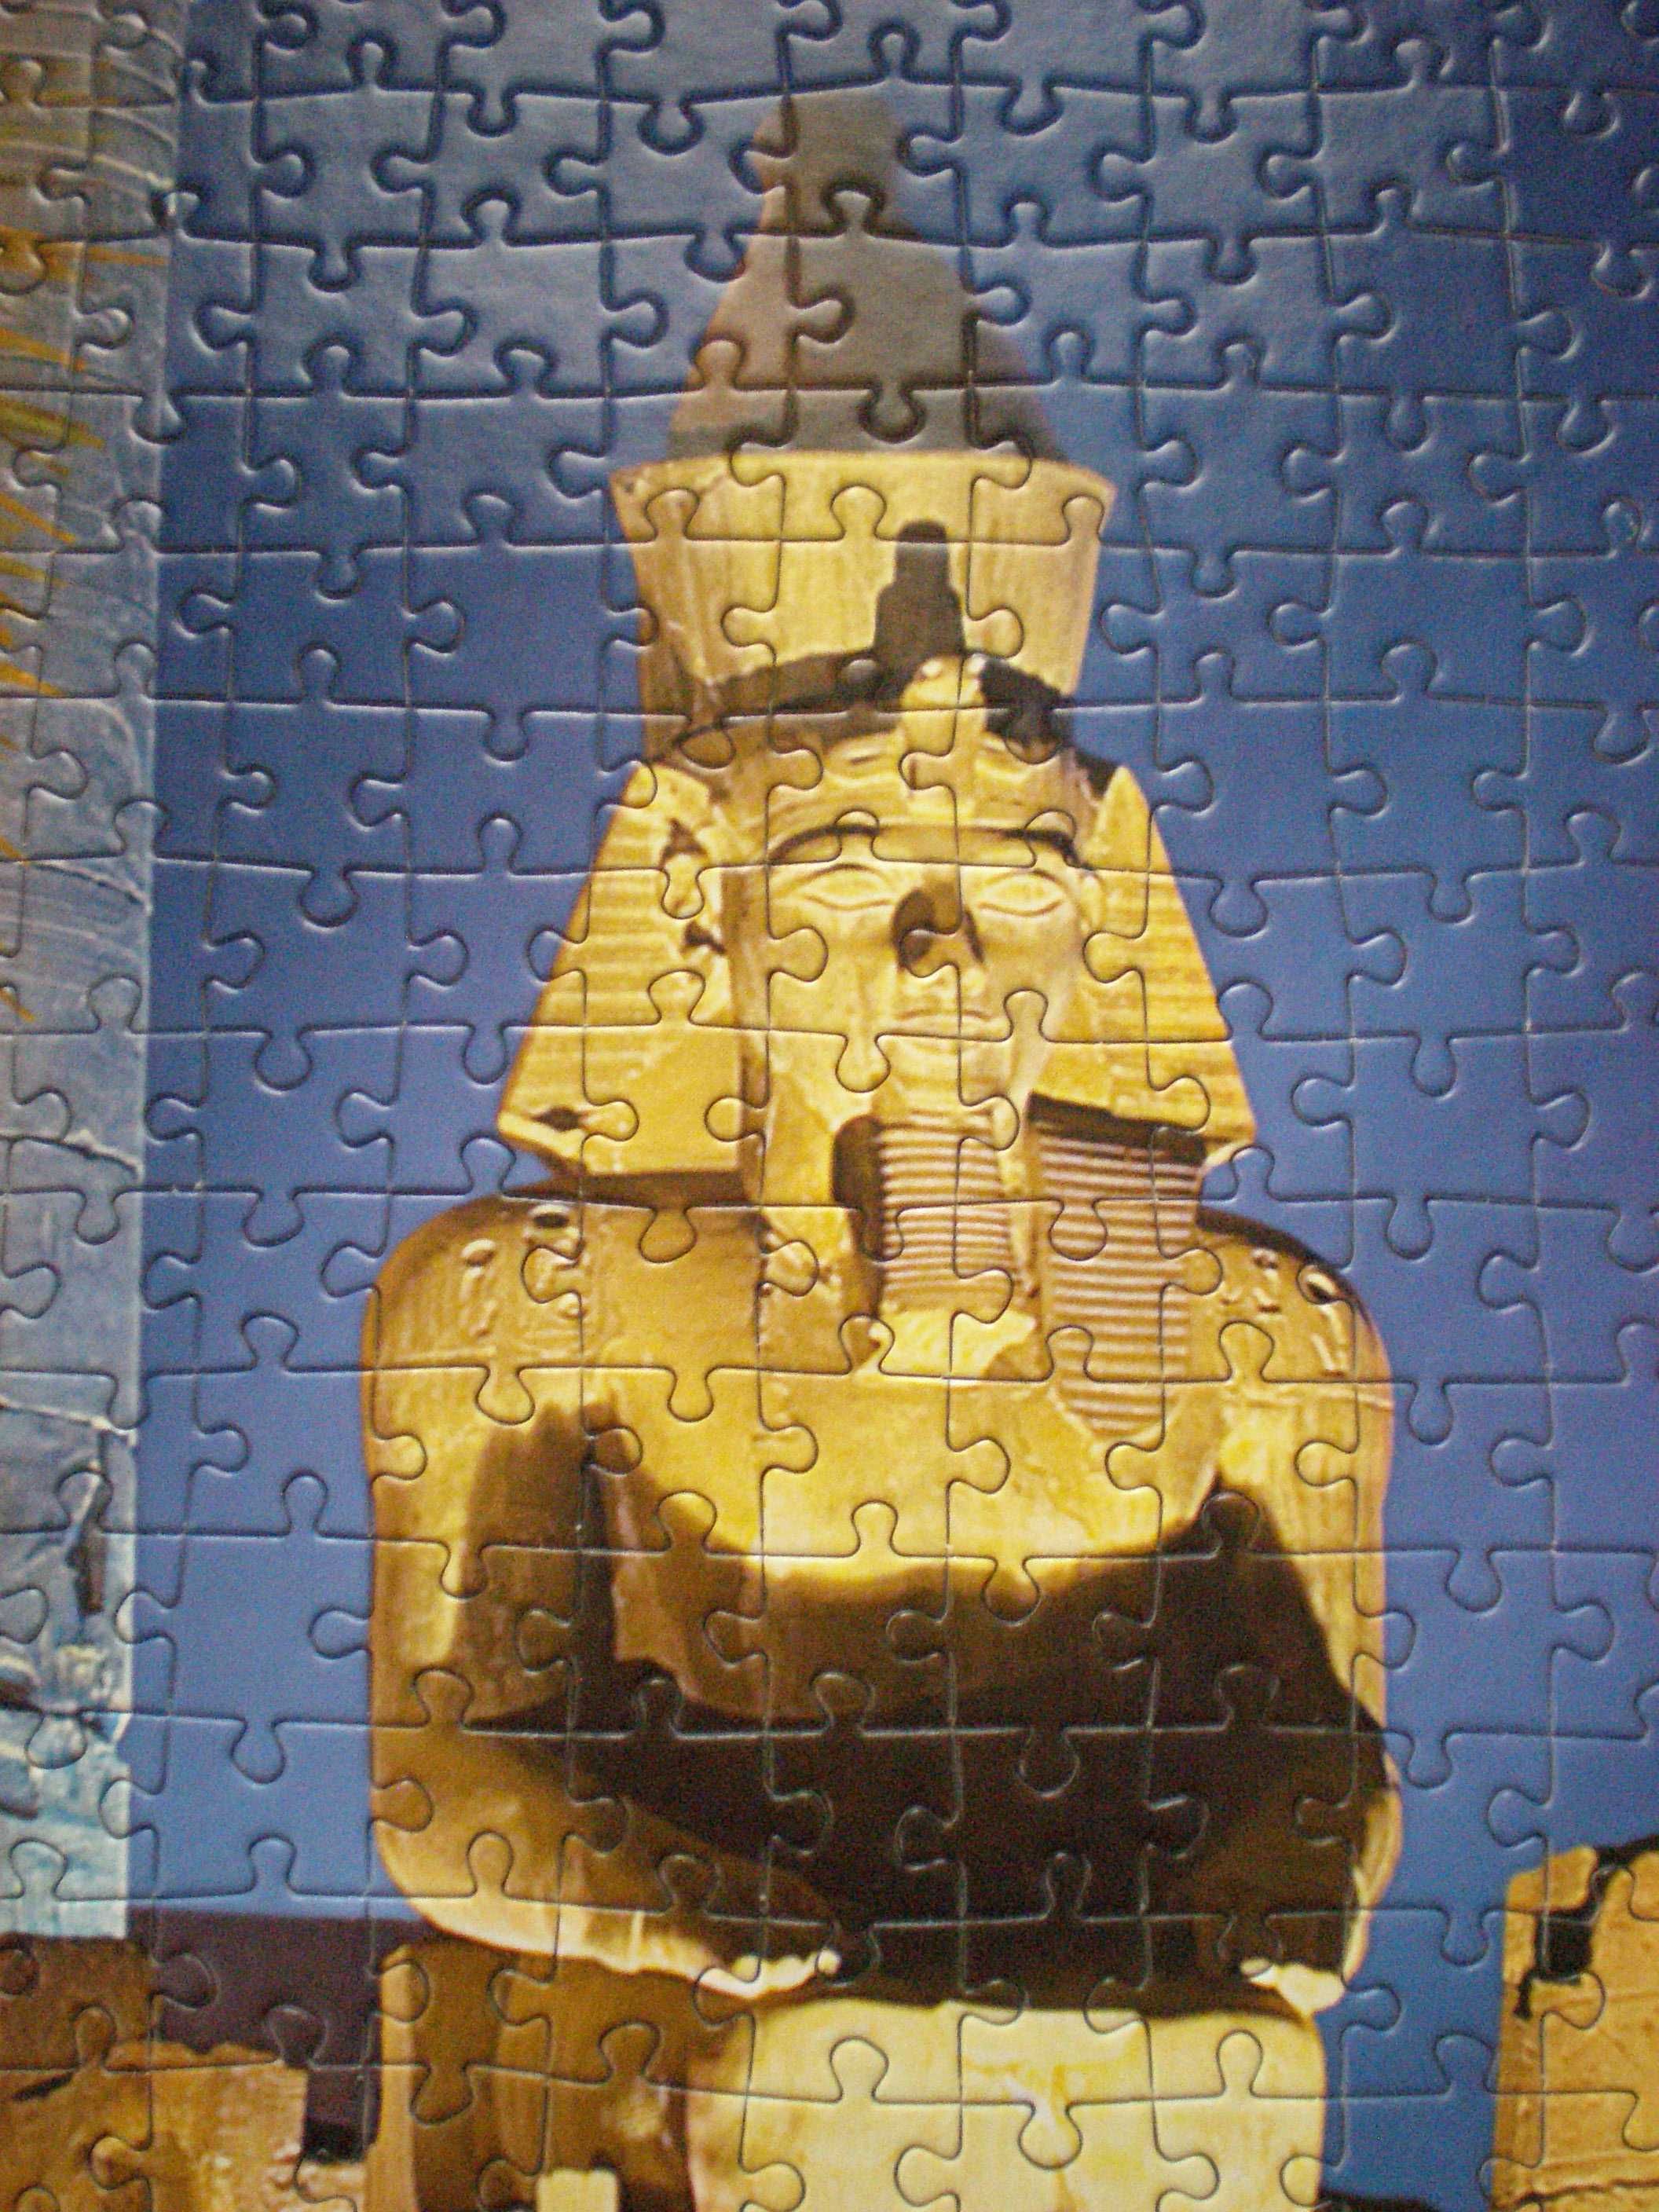 Луксор, Египет (мозаика) Puzzle-1000 элементов 68 х47 см.